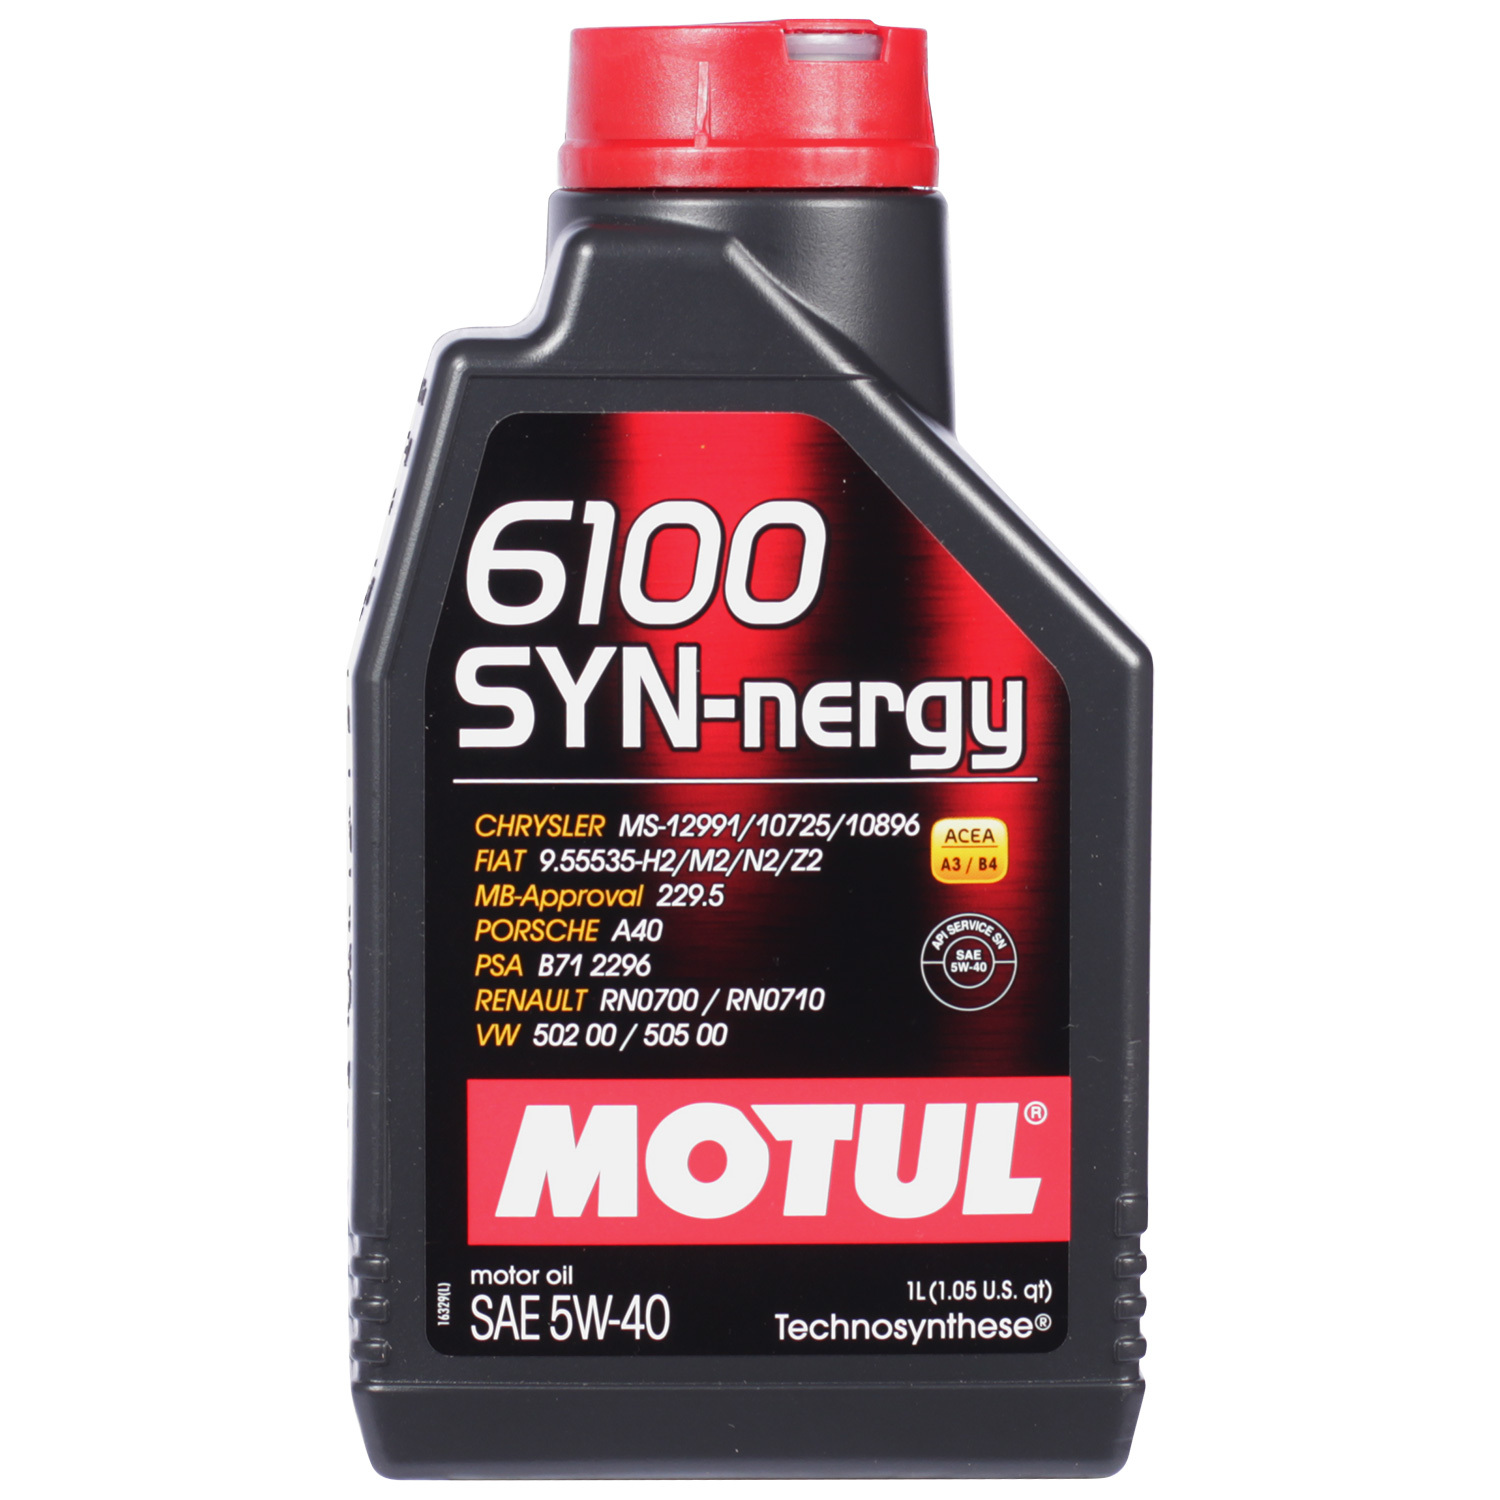 Motul Моторное масло Motul 6100 SYN-NERGY 5W-40, 1 л масло моторное motul 8100 eco nergy 0w 30 1 л 102793